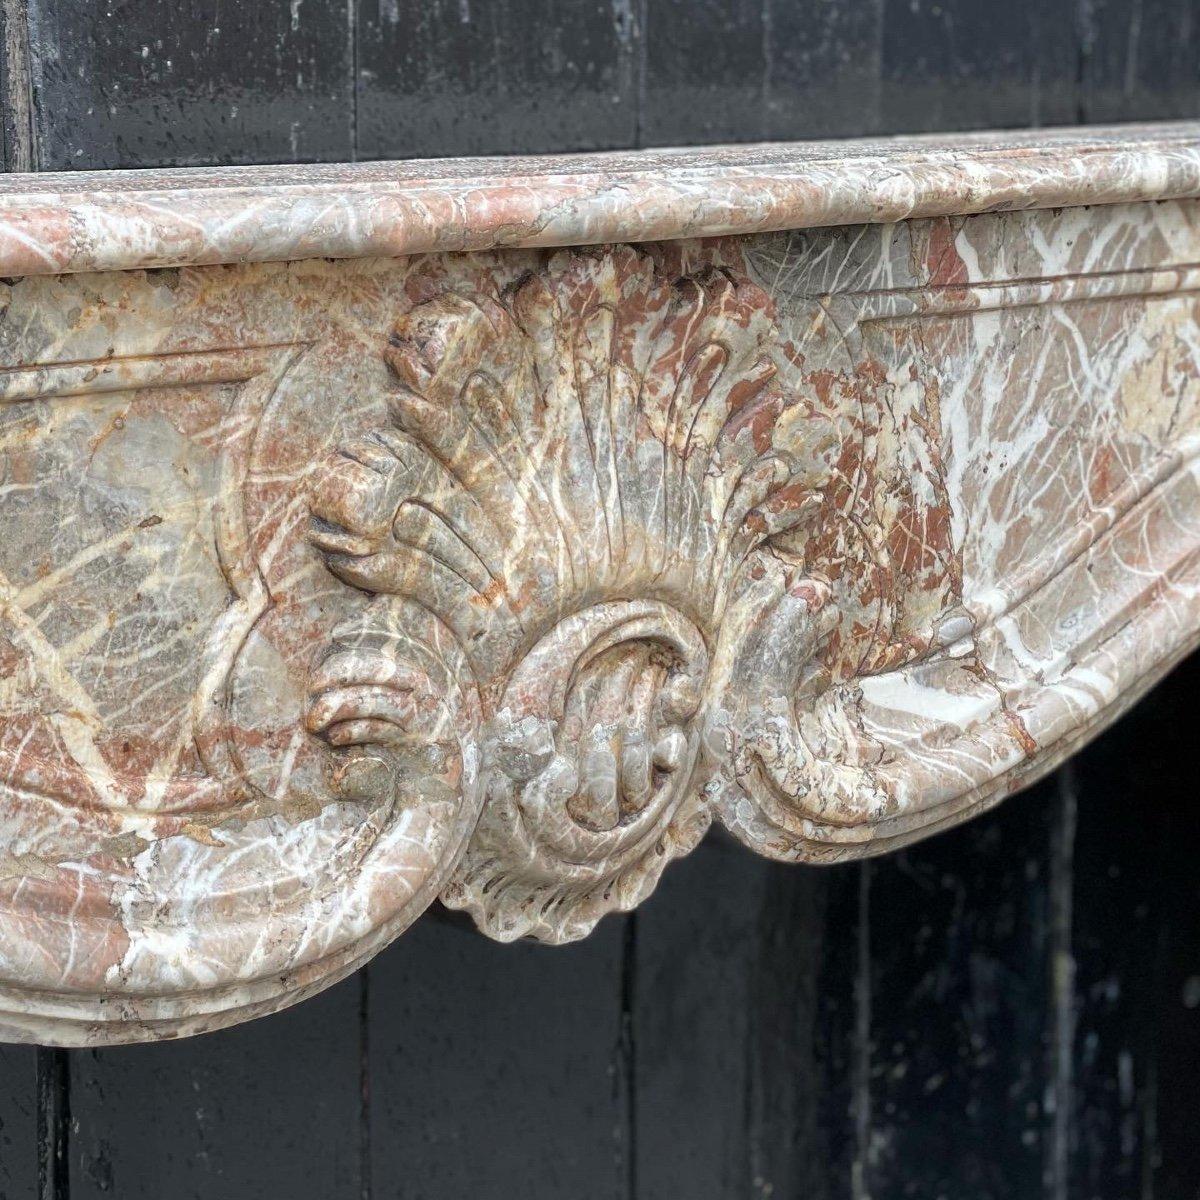 Regency-Kamin aus grauem Marmor aus den Ardennen

Restaurierter Türsturz 

Abmessungen der Feuerstelle: 93cm x 107cm